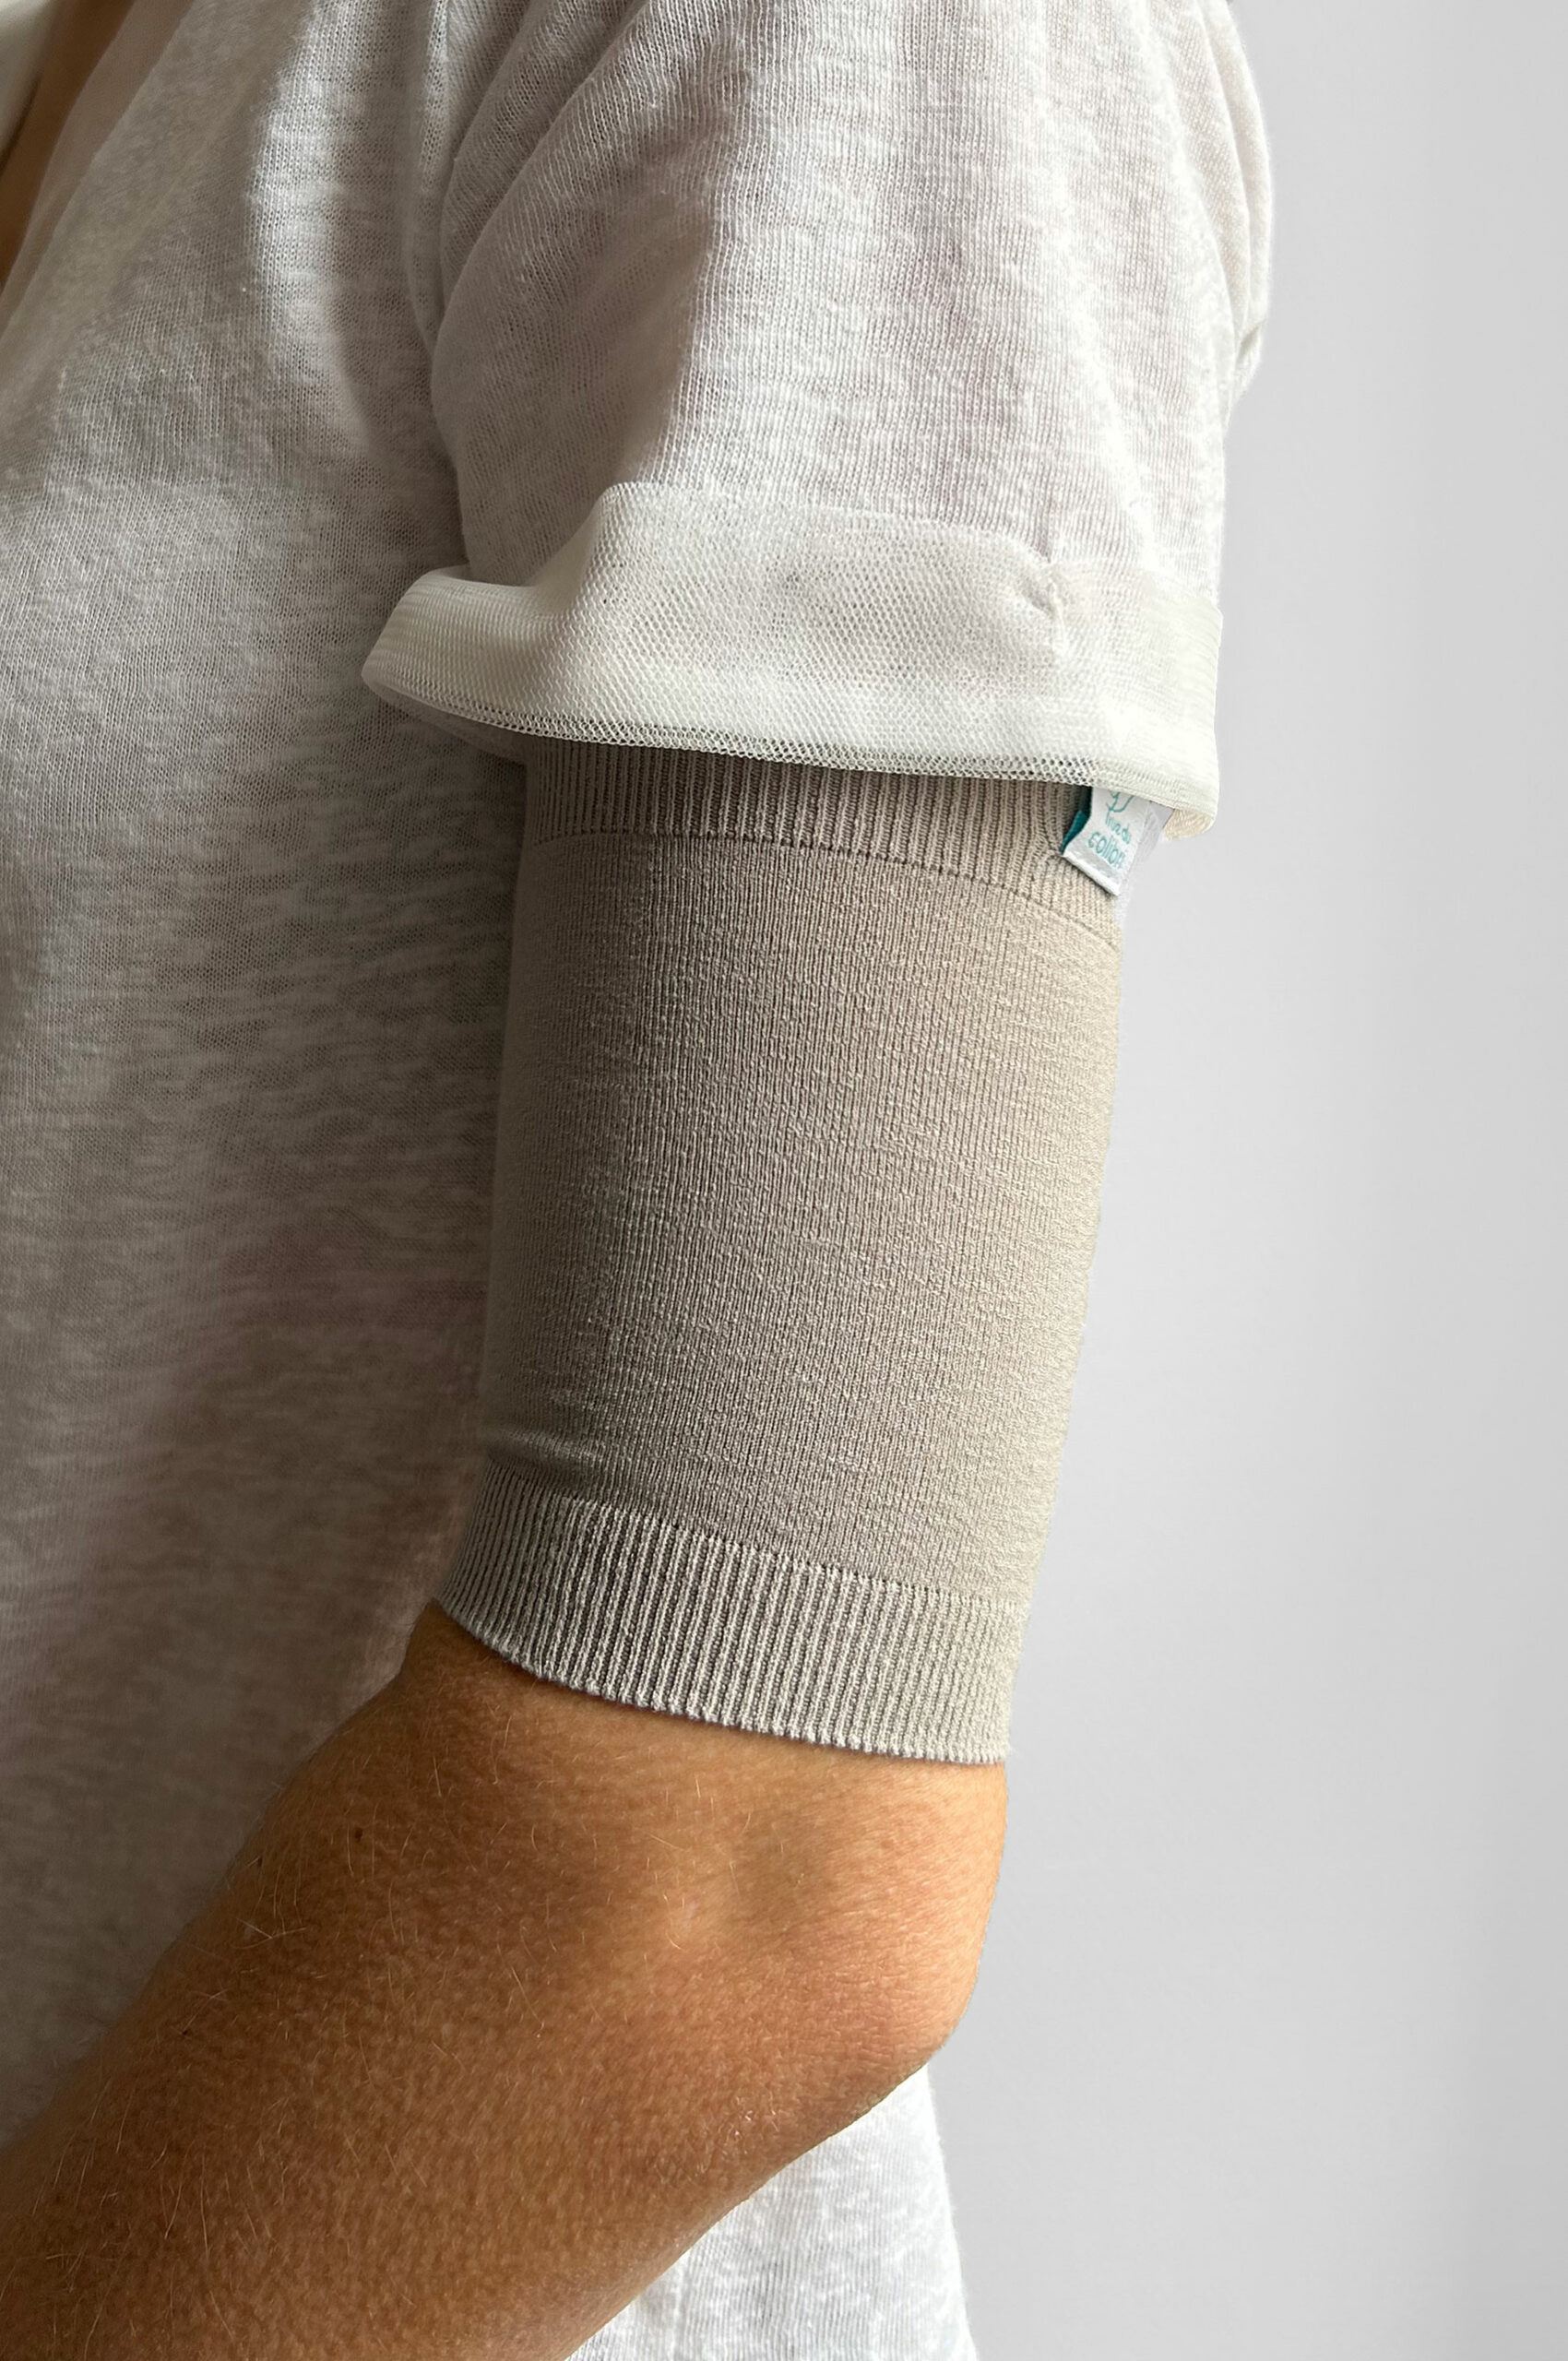 un manchon de protection pour une fistule en dialyse ou pour un dispositif dans la partie haute du bras